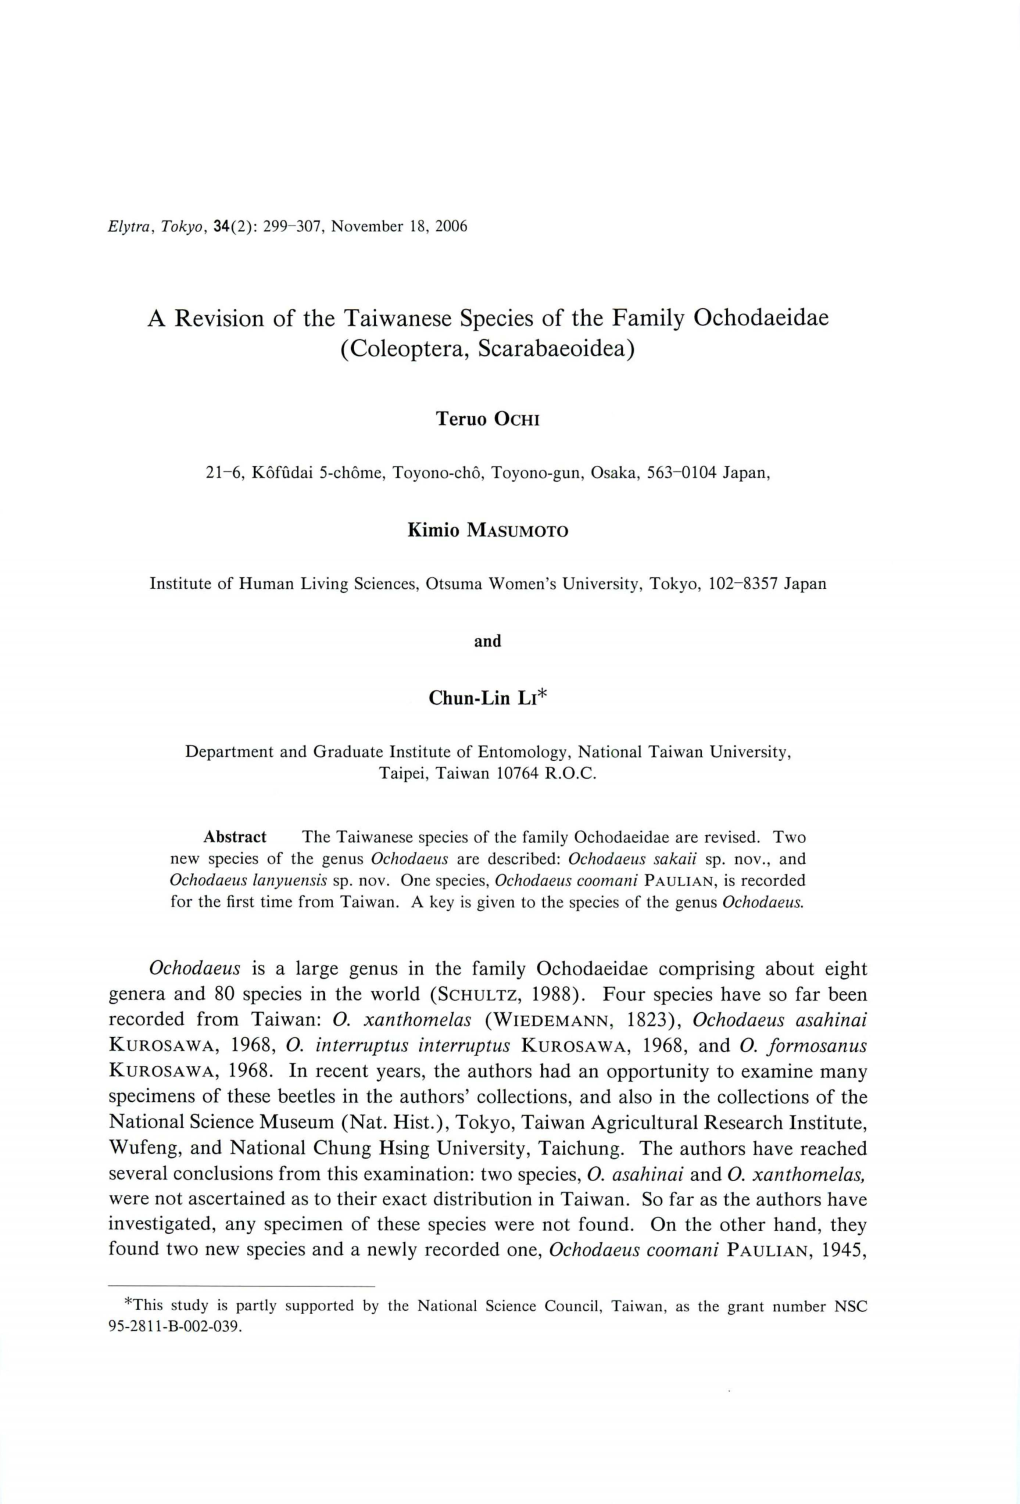 A Revisionof the Taiwanesespeciesof Thefamily Ochodaeidae